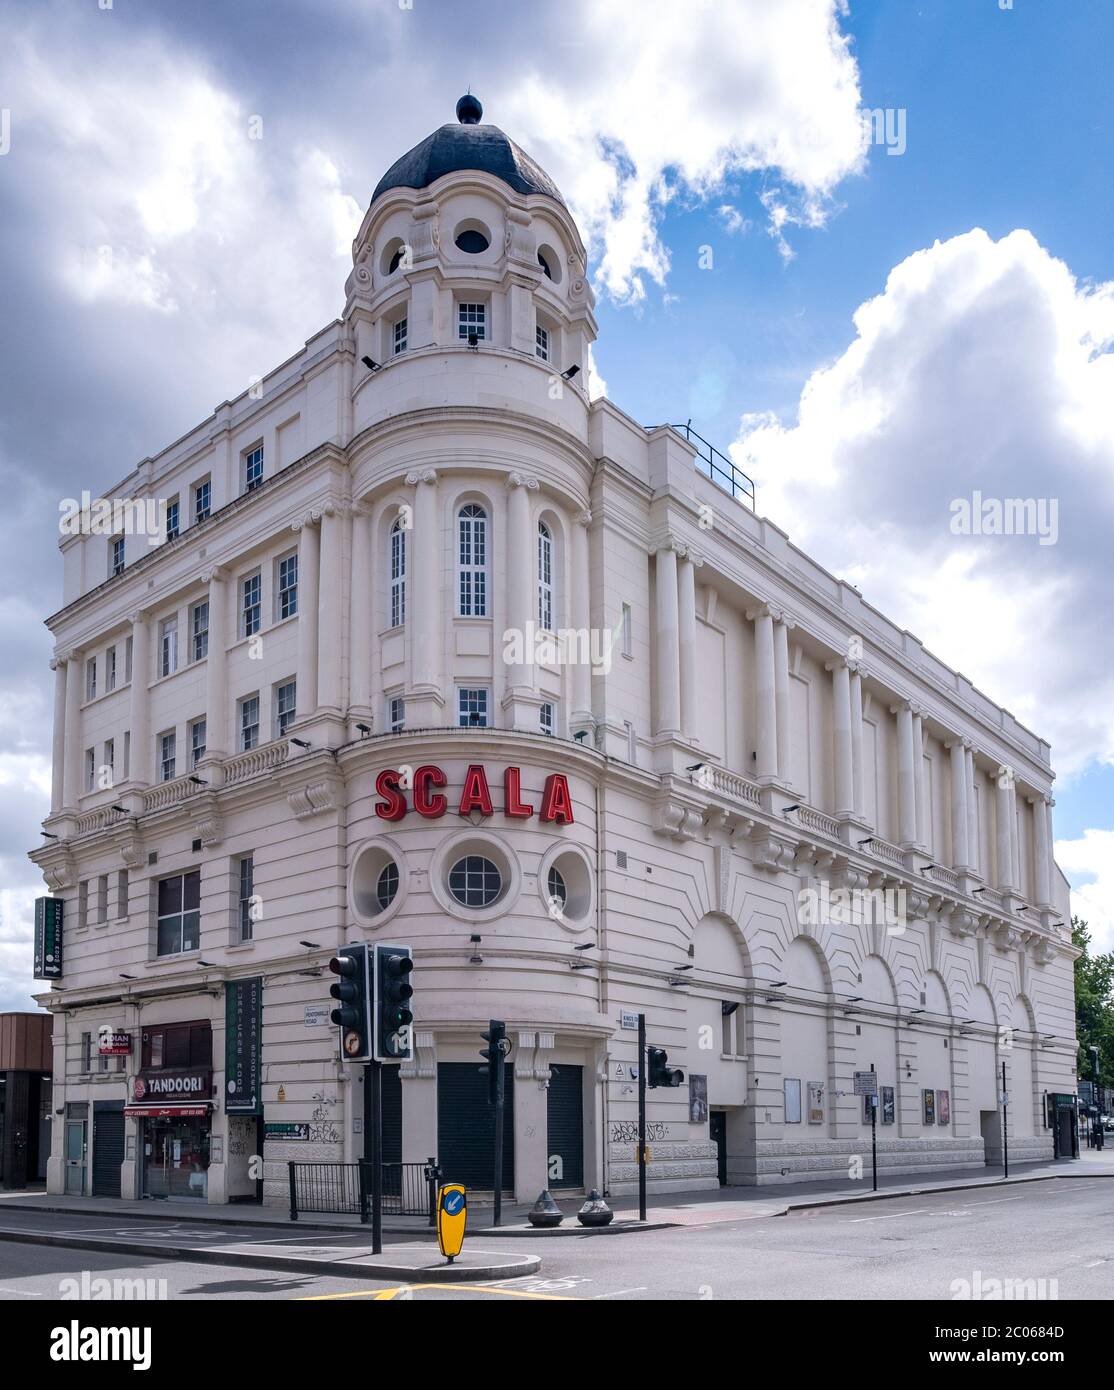 Scala, ein ehemaliges Kino, das zum Nachtclub und Veranstaltungsort für Live-Musik in der Pentonville Road, London, England, in der Nähe des Bahnhofs King's Cross wurde. Stockfoto